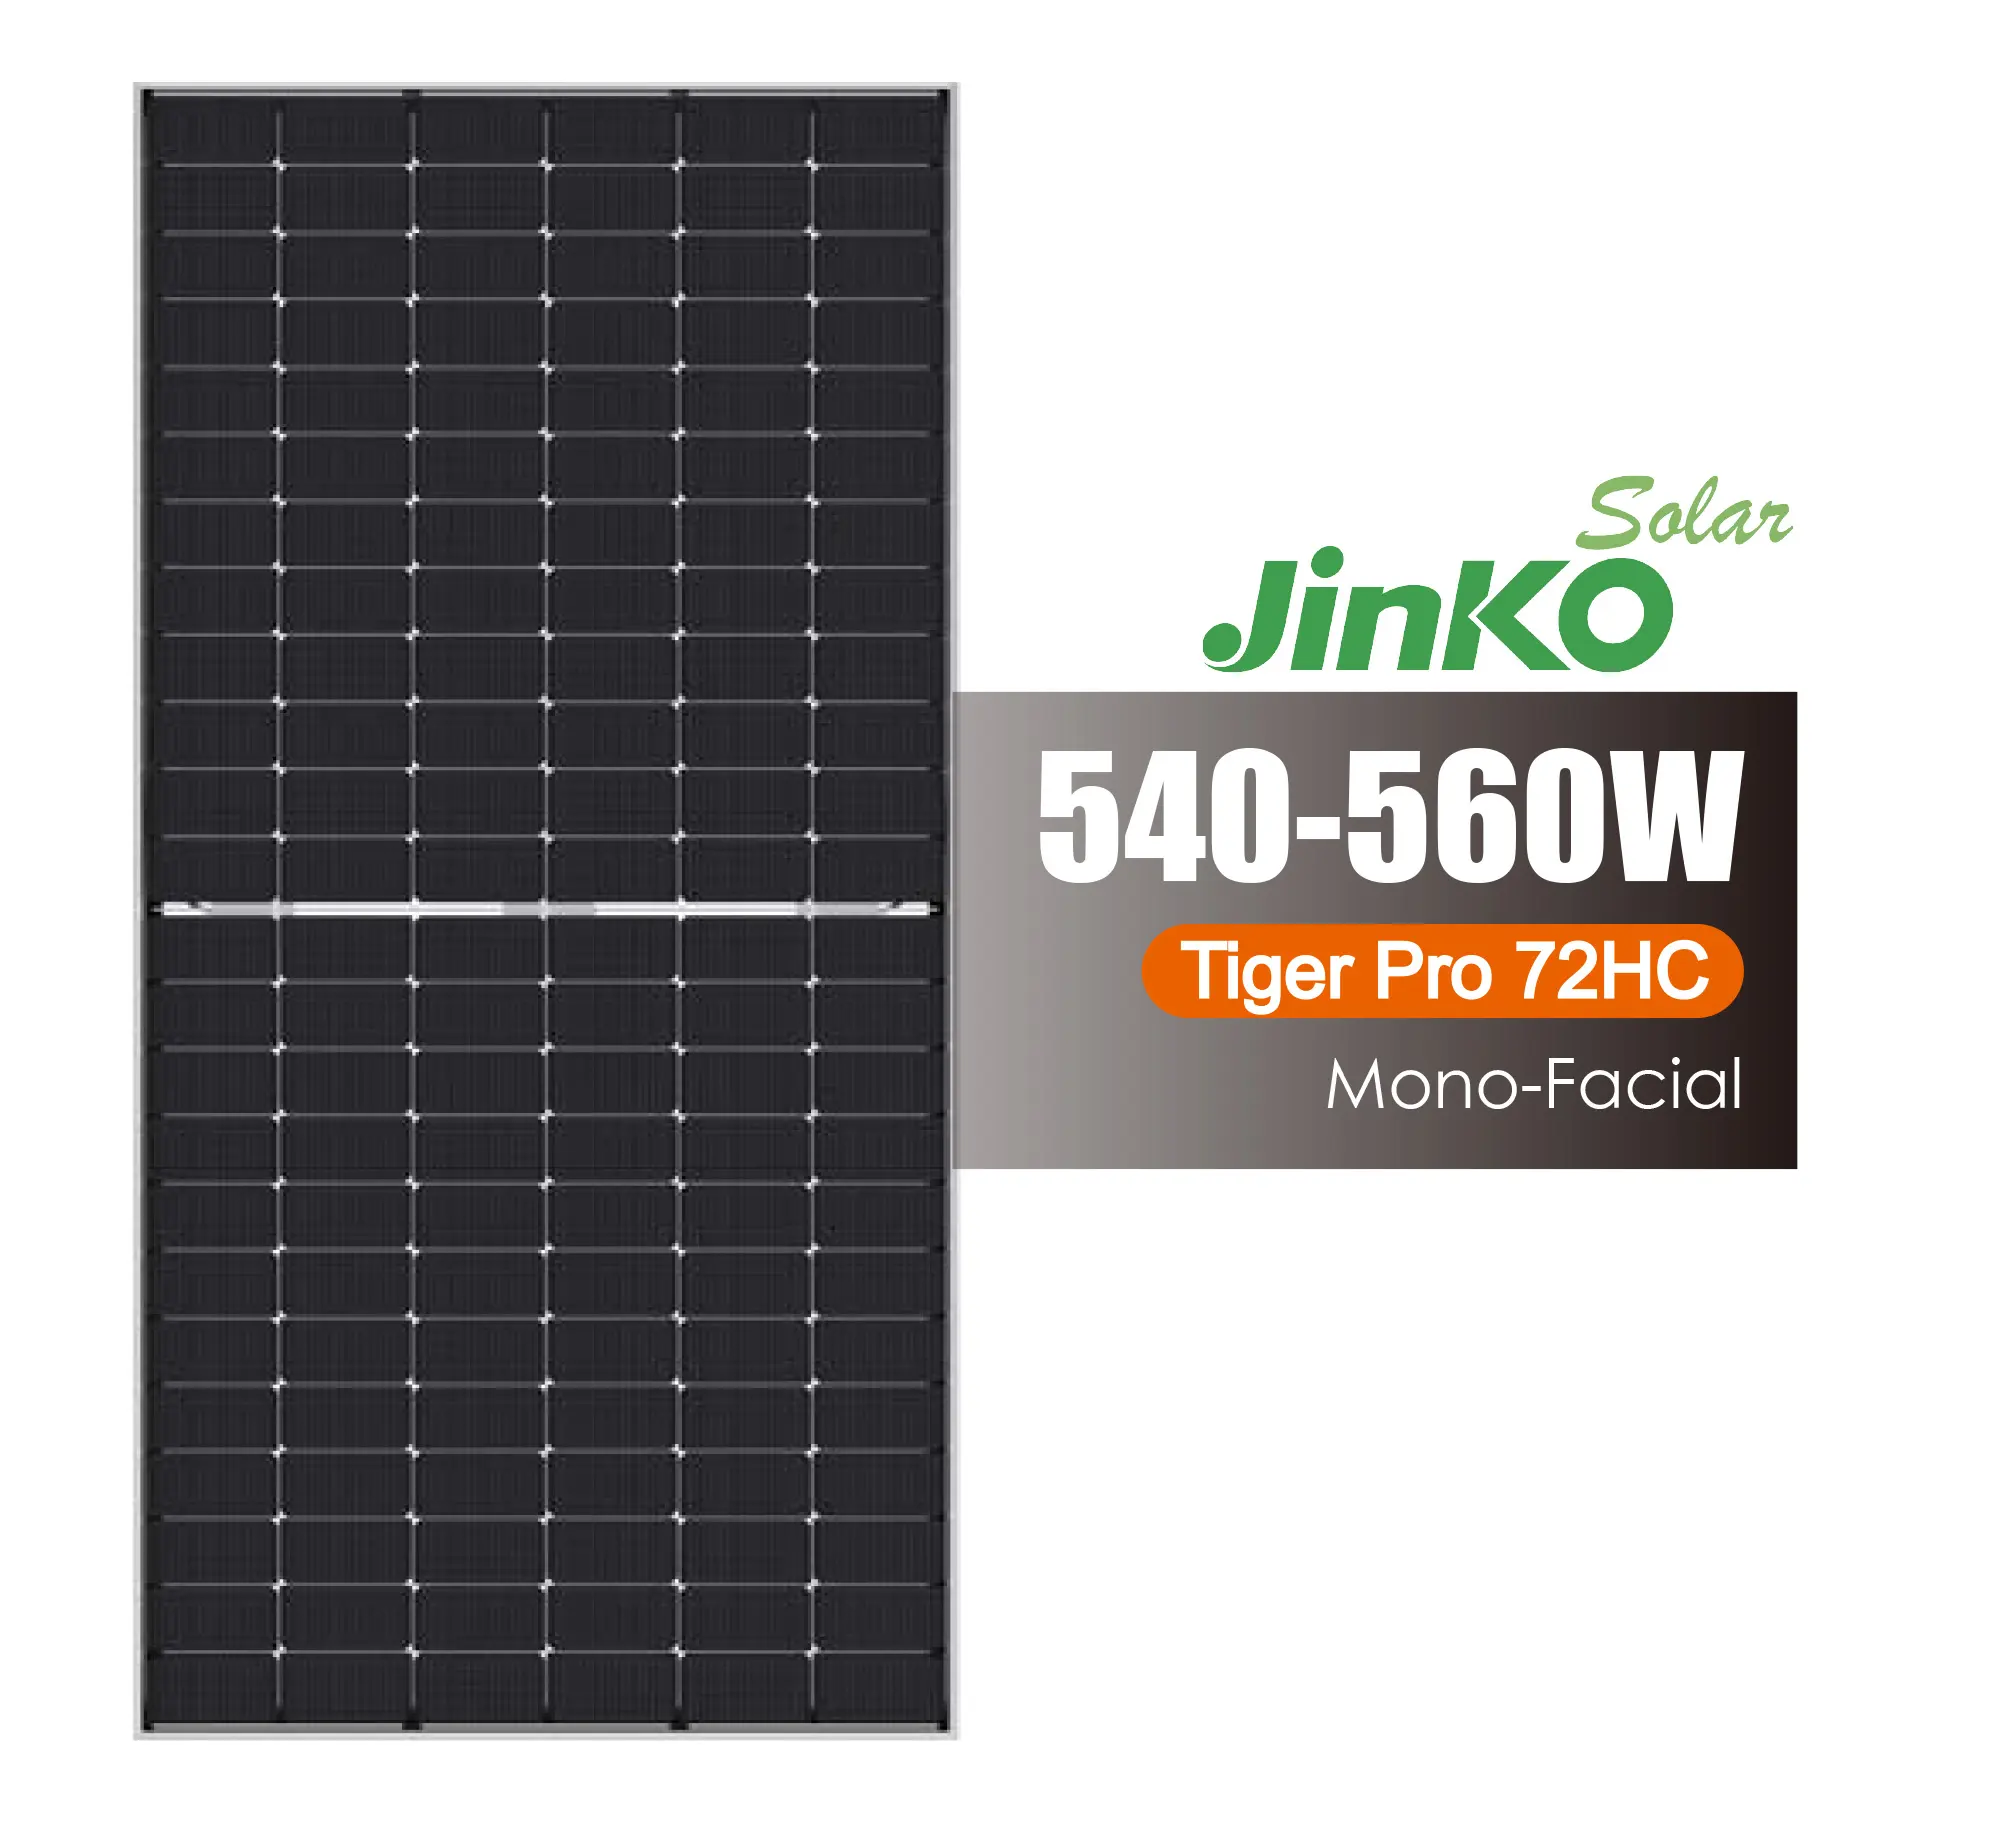 Jinko yüksek kalite güneş panelleri 182 hücreleri Mono Tiger Pro 72HC 540-560W güneş panelleri güneş sistemi için